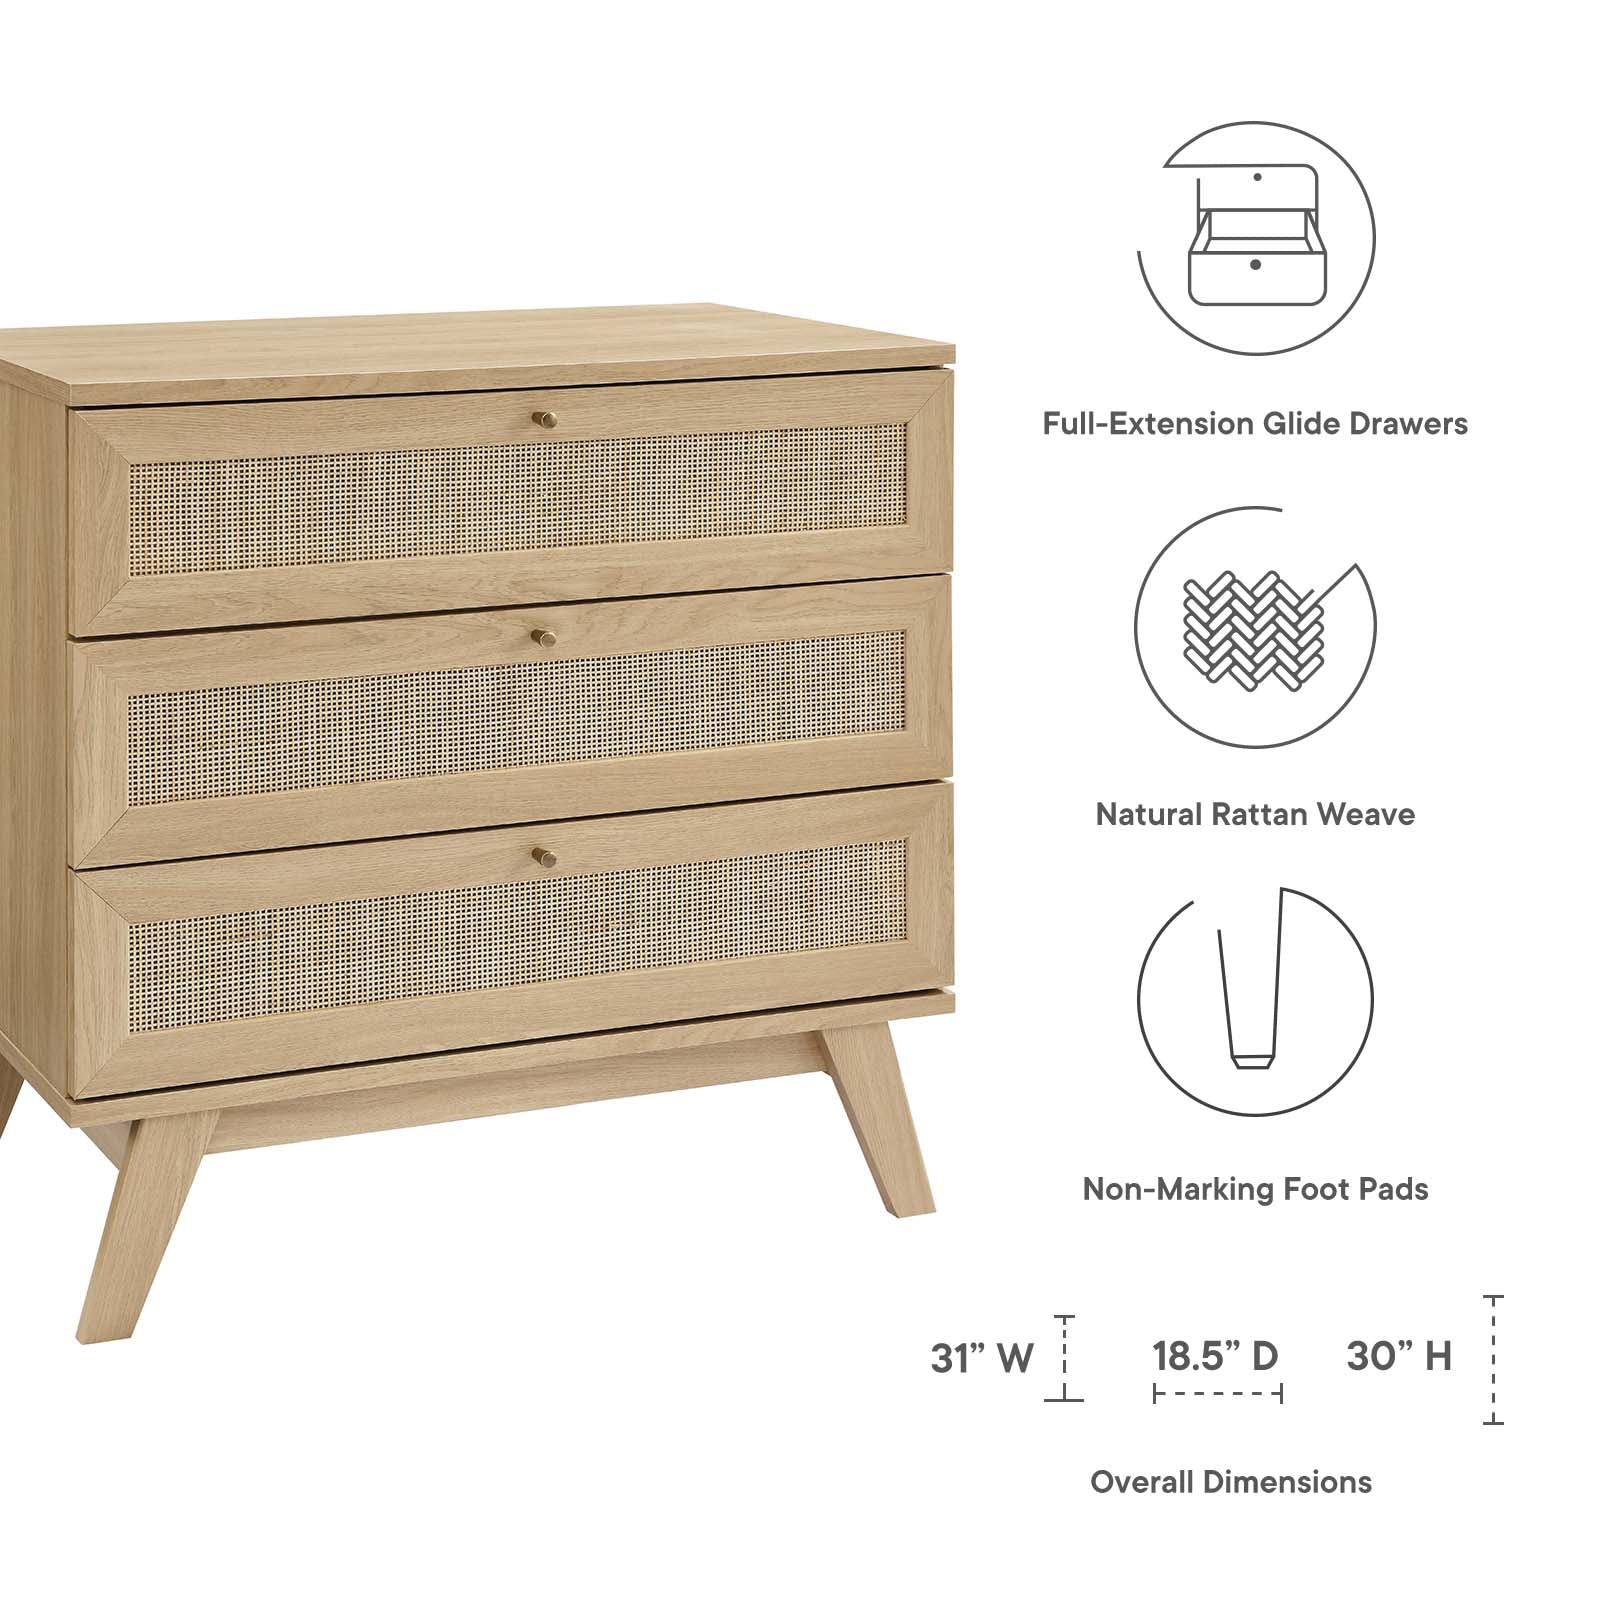 Soma 3-Drawer Dresser - East Shore Modern Home Furnishings